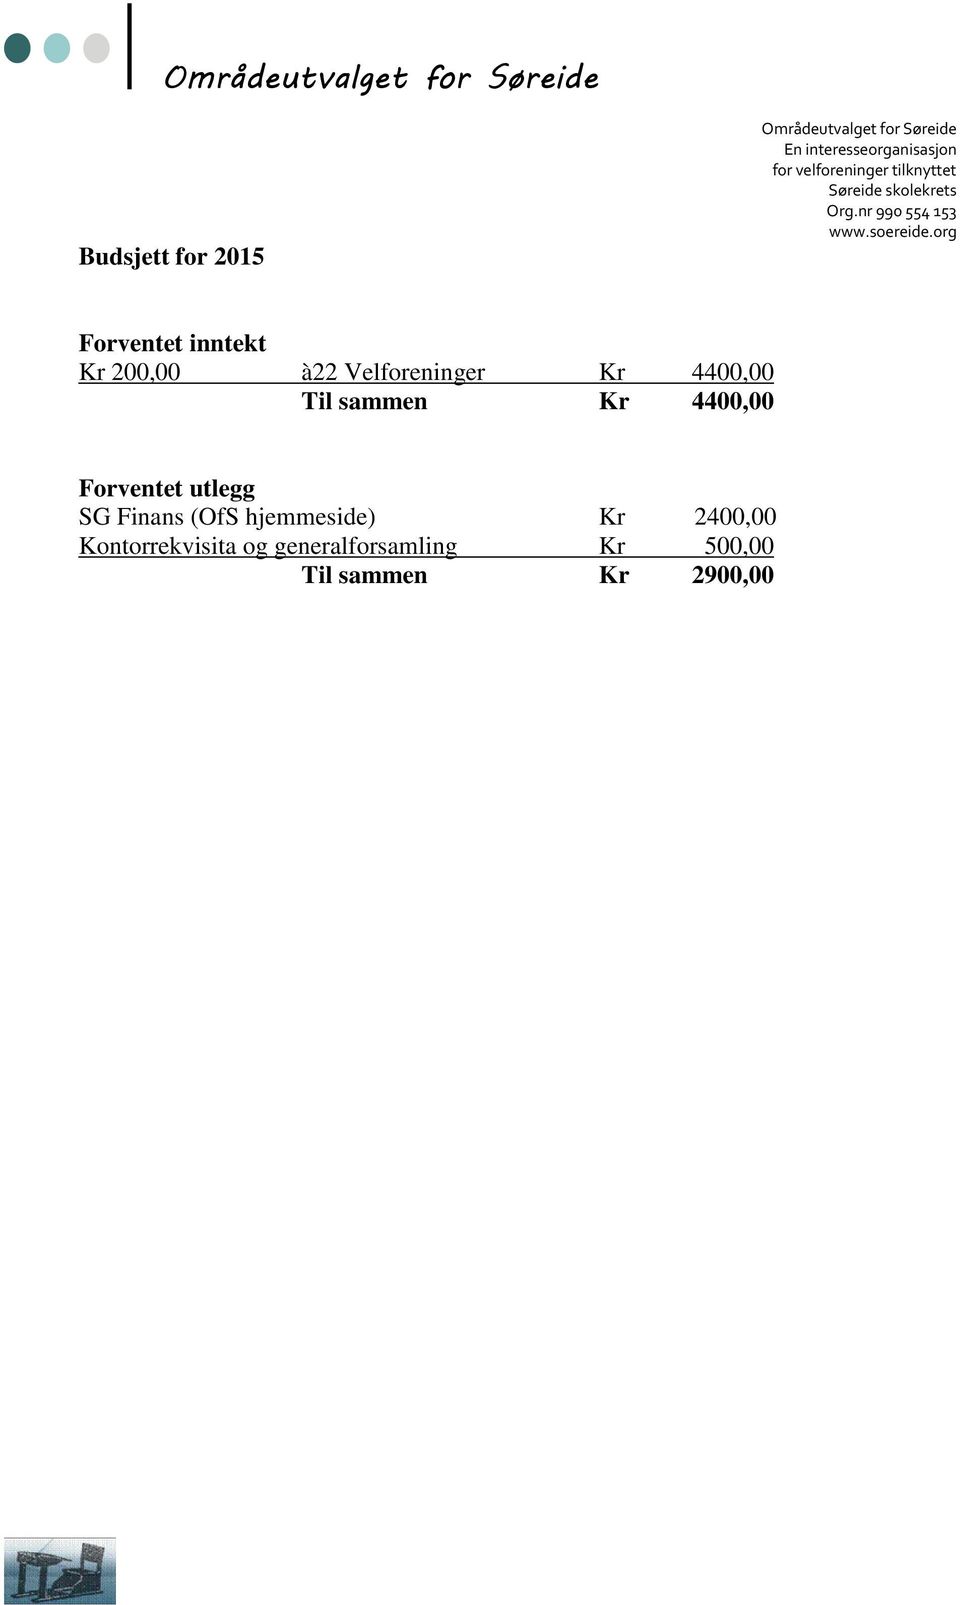 Forventet utlegg SG Finans (OfS hjemmeside) Kr 2400,00